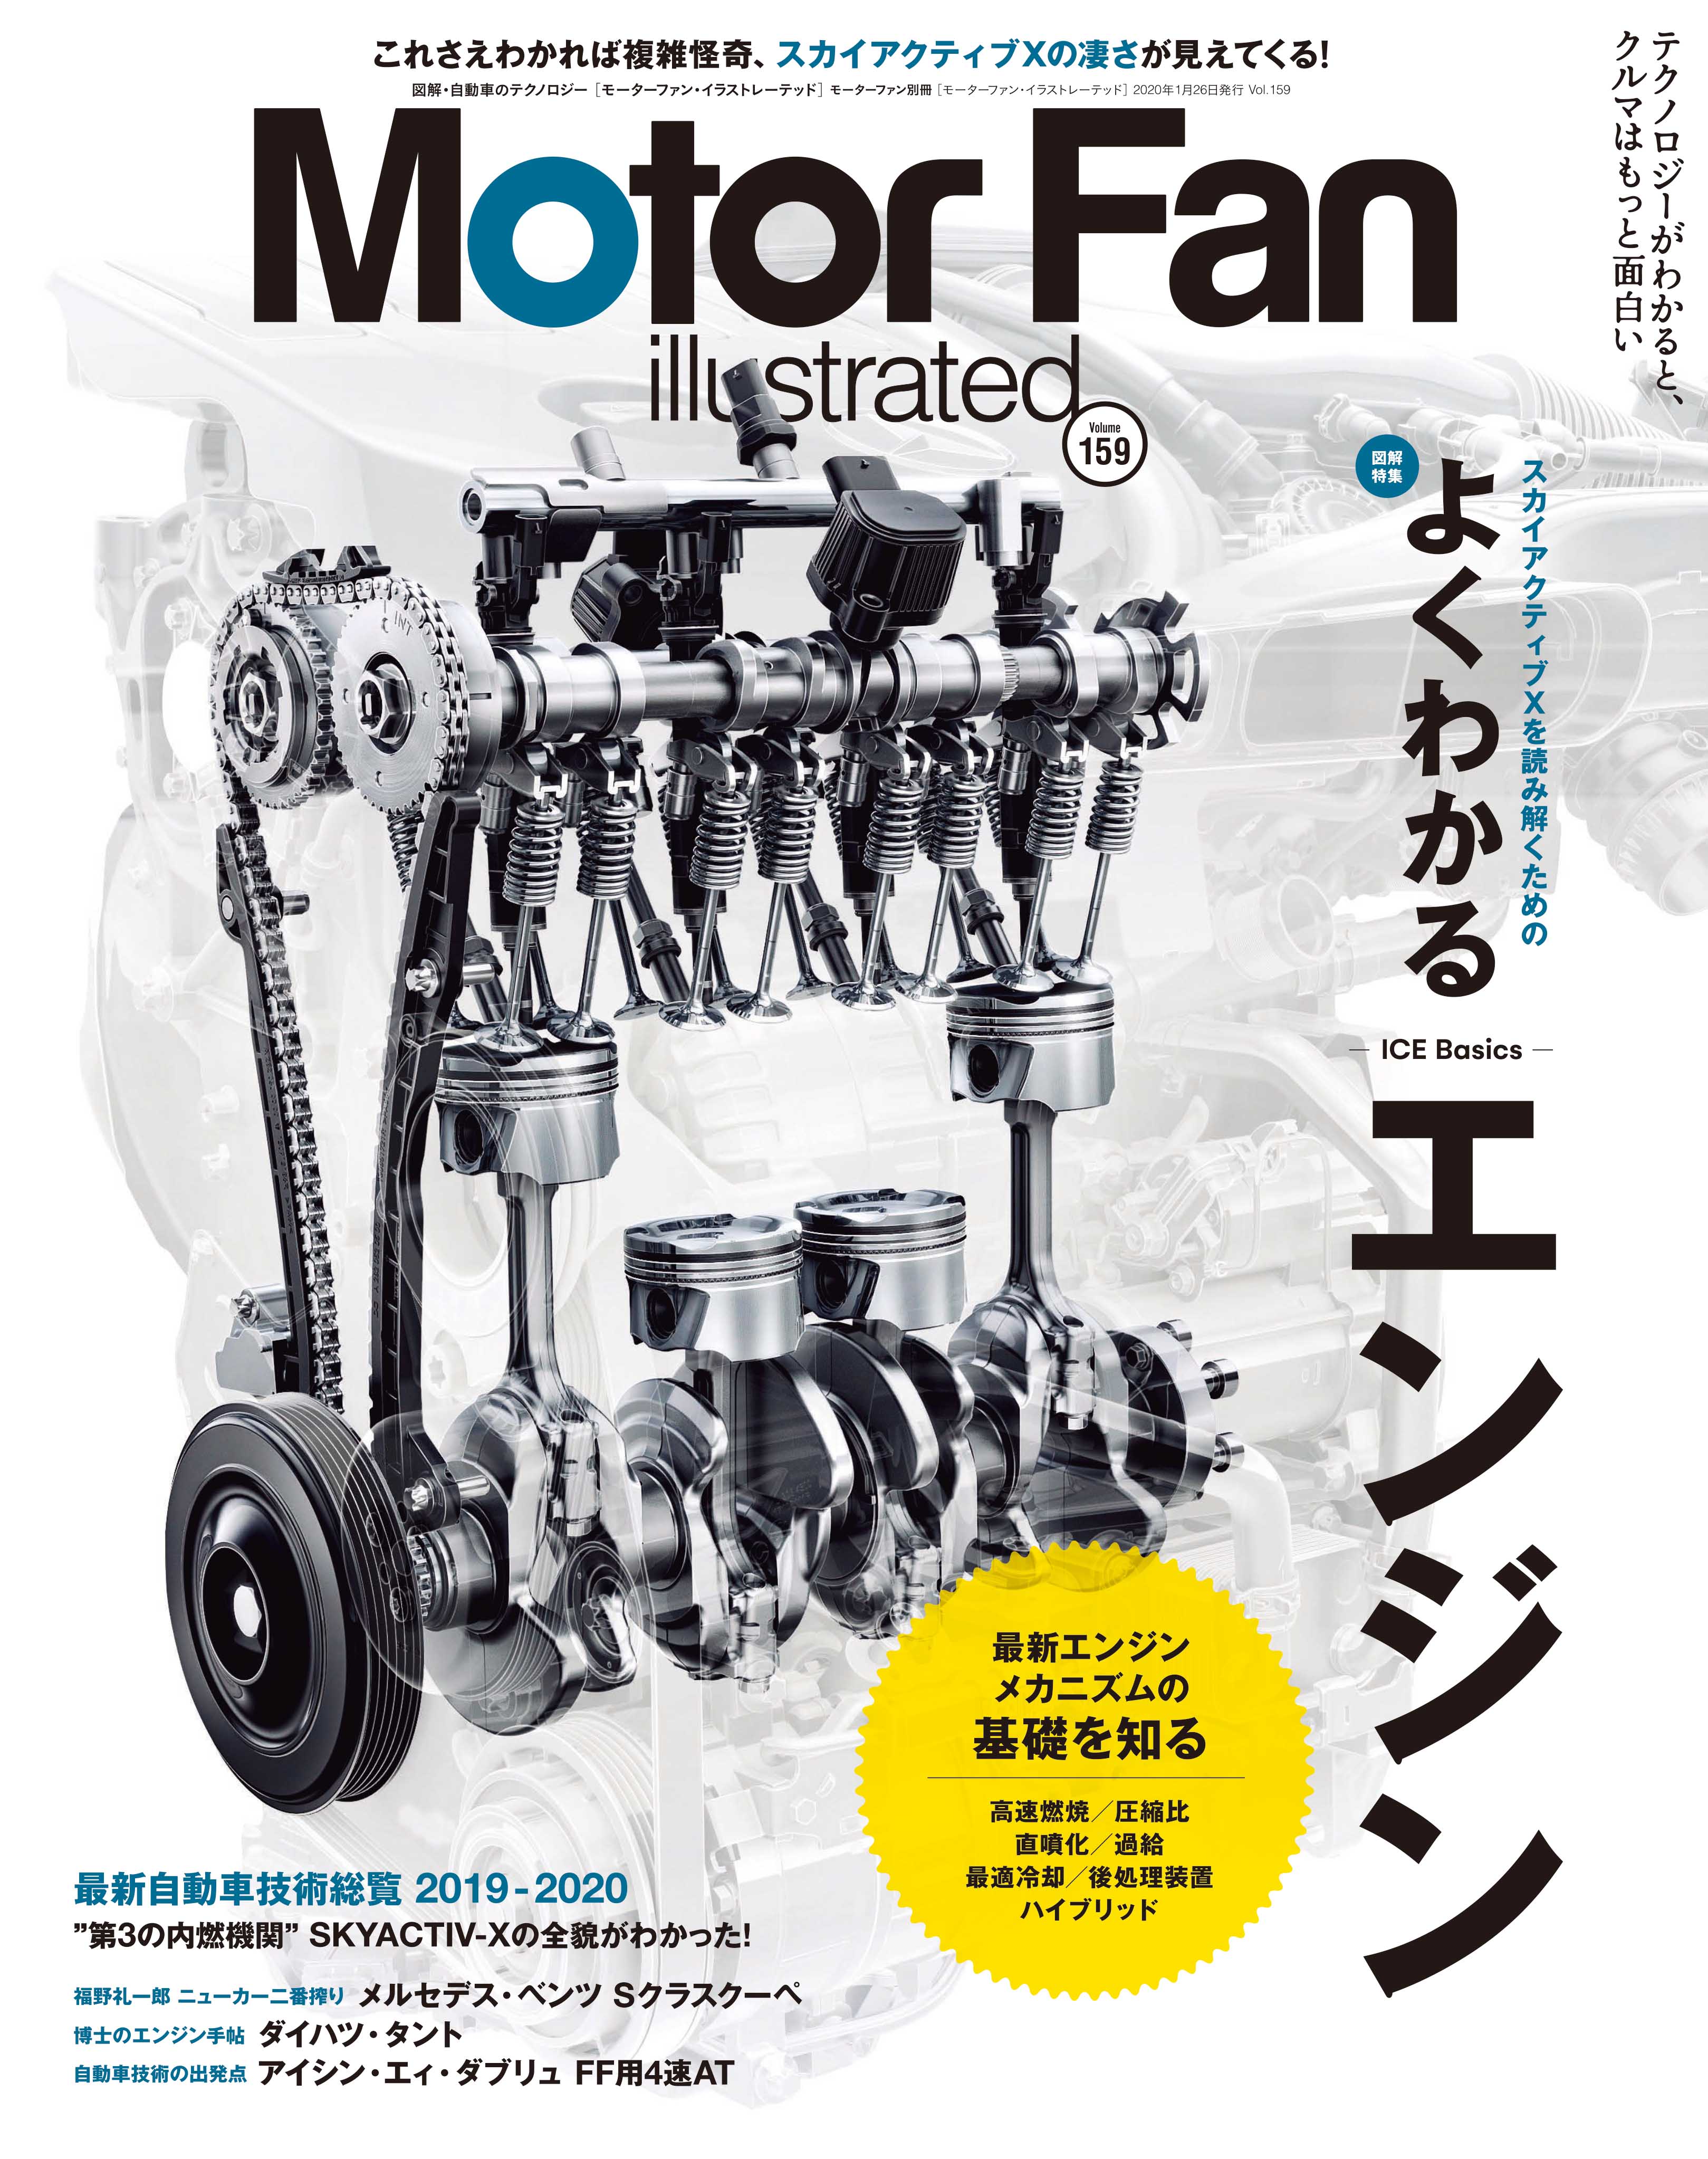 モーターファン イラストレーテッド Vol 159は よくわかるエンジン 特集 三栄のプレスリリース